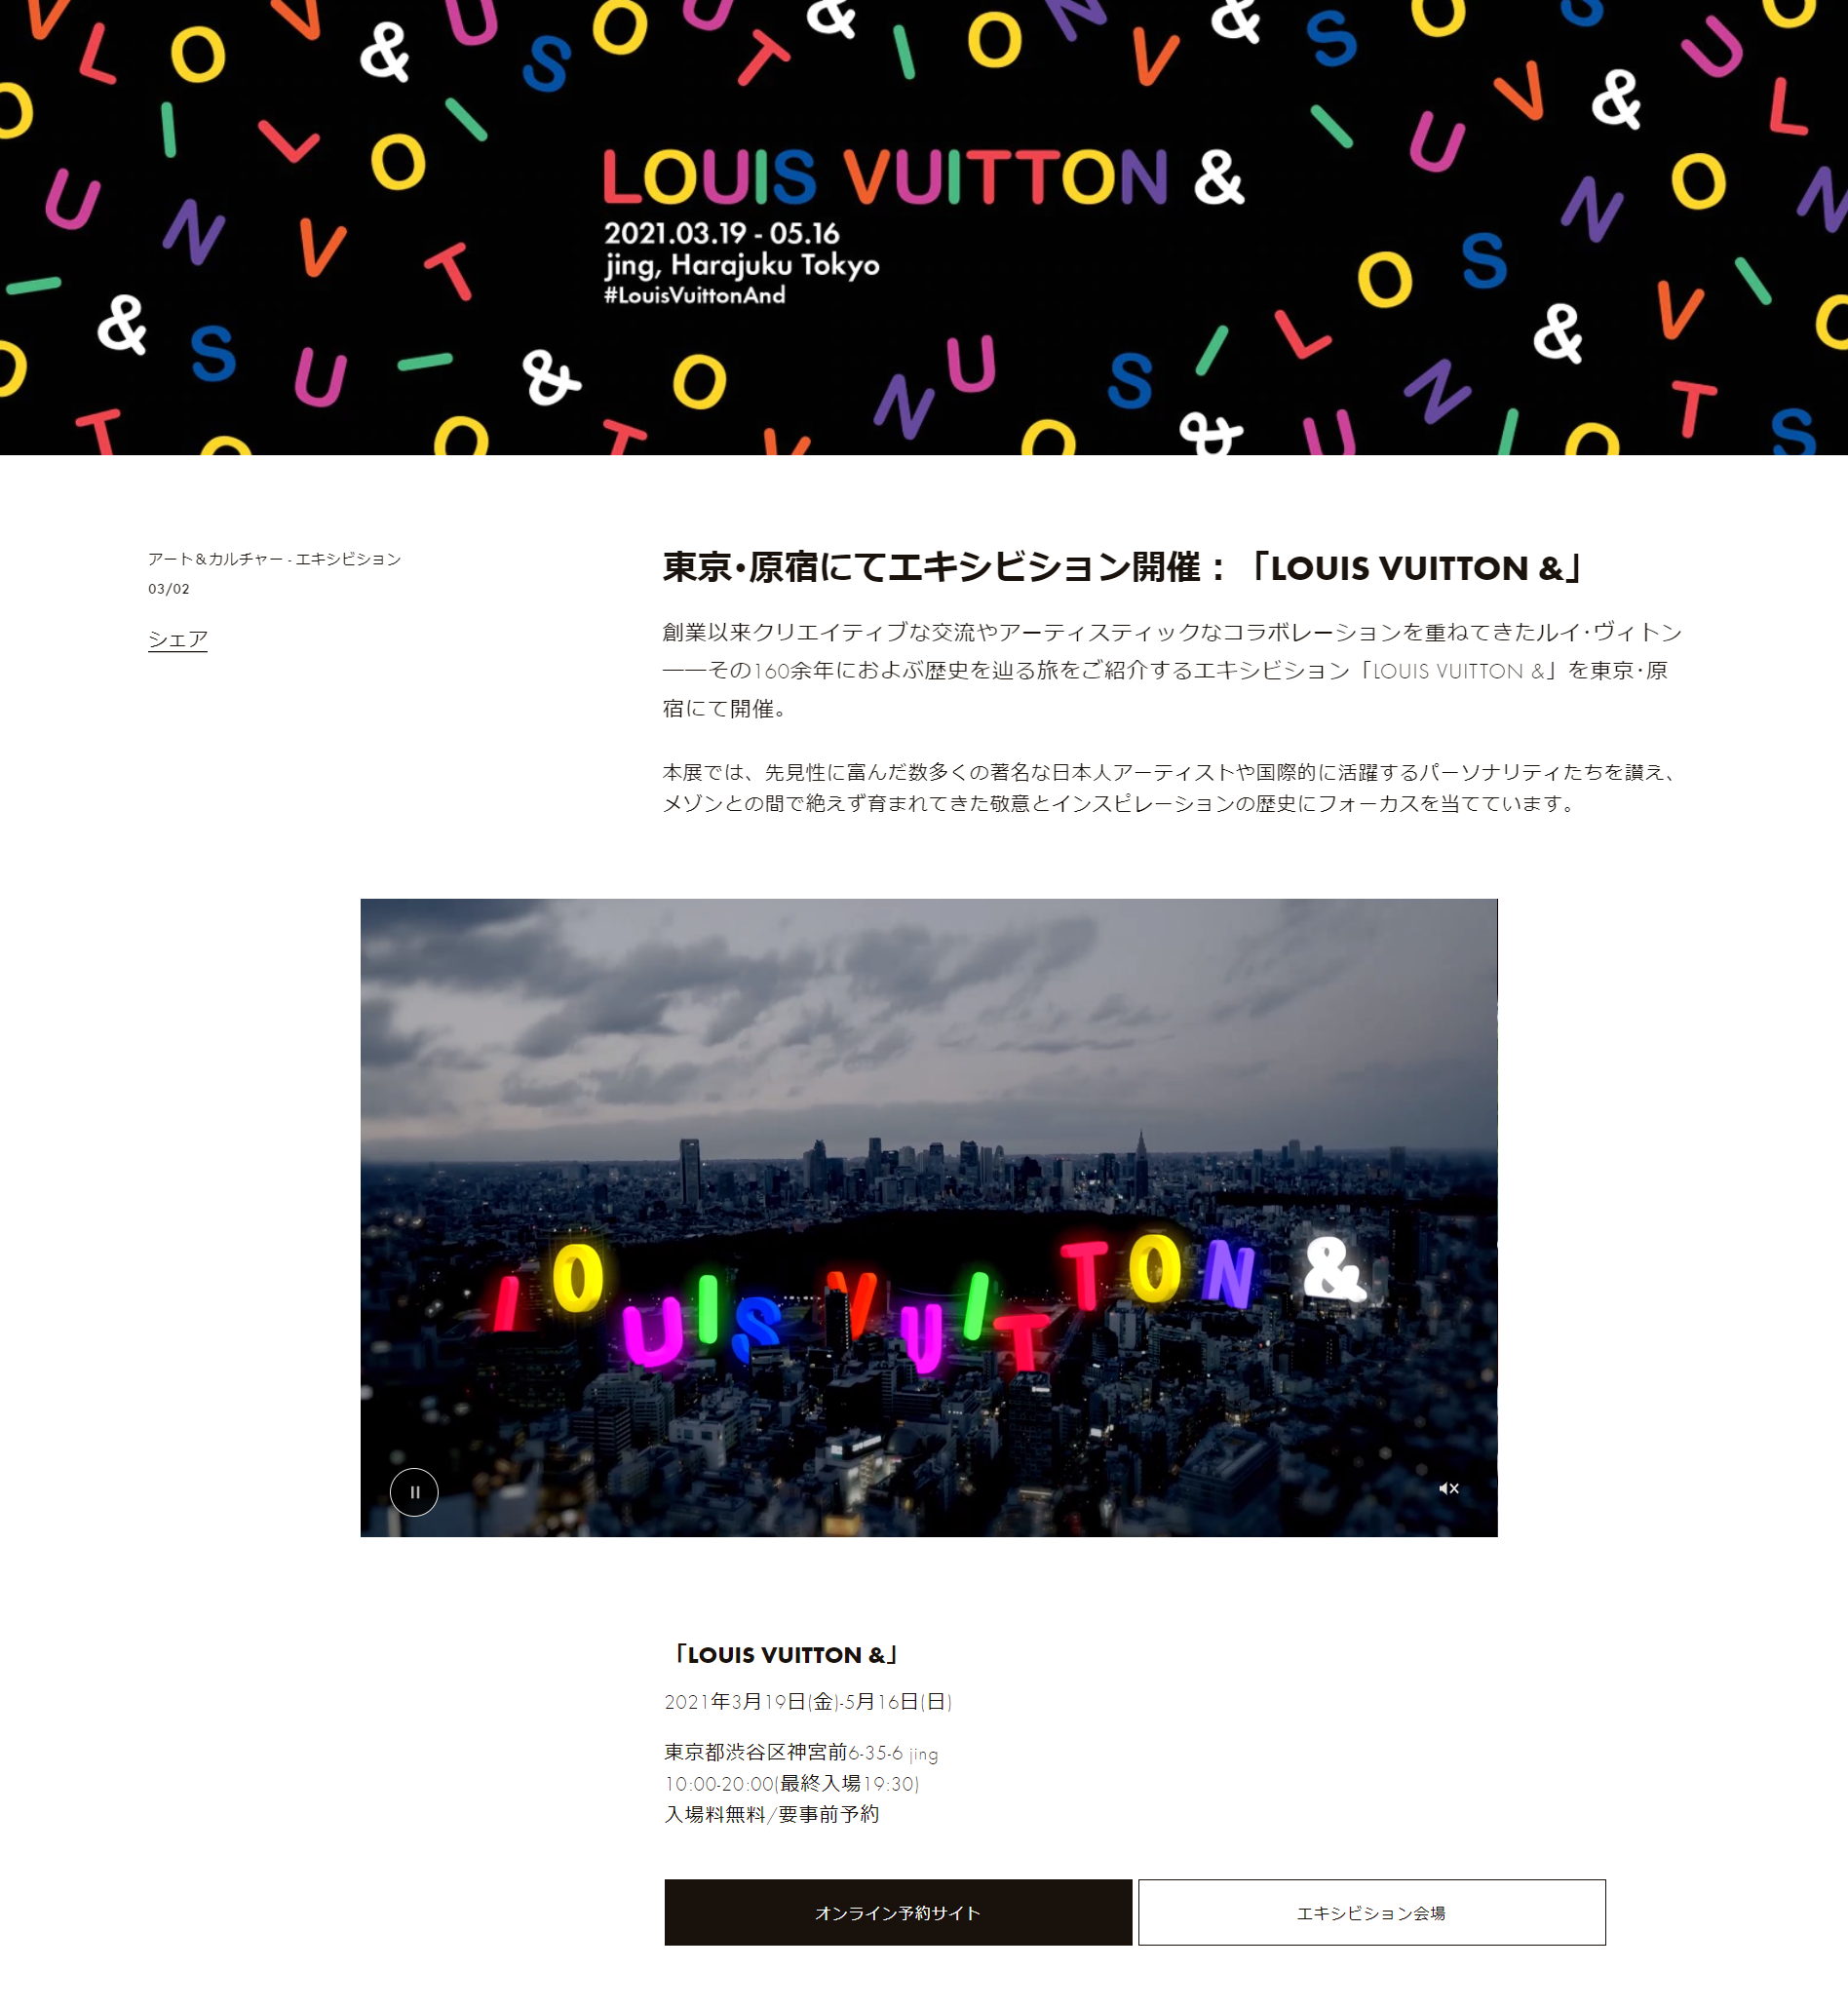 ルイ ヴィトン エキシビション Louis Vuitton のティーザー動画を公開 オンライン予約もスタート ルイ ヴィトン ジャパン株式会社の プレスリリース